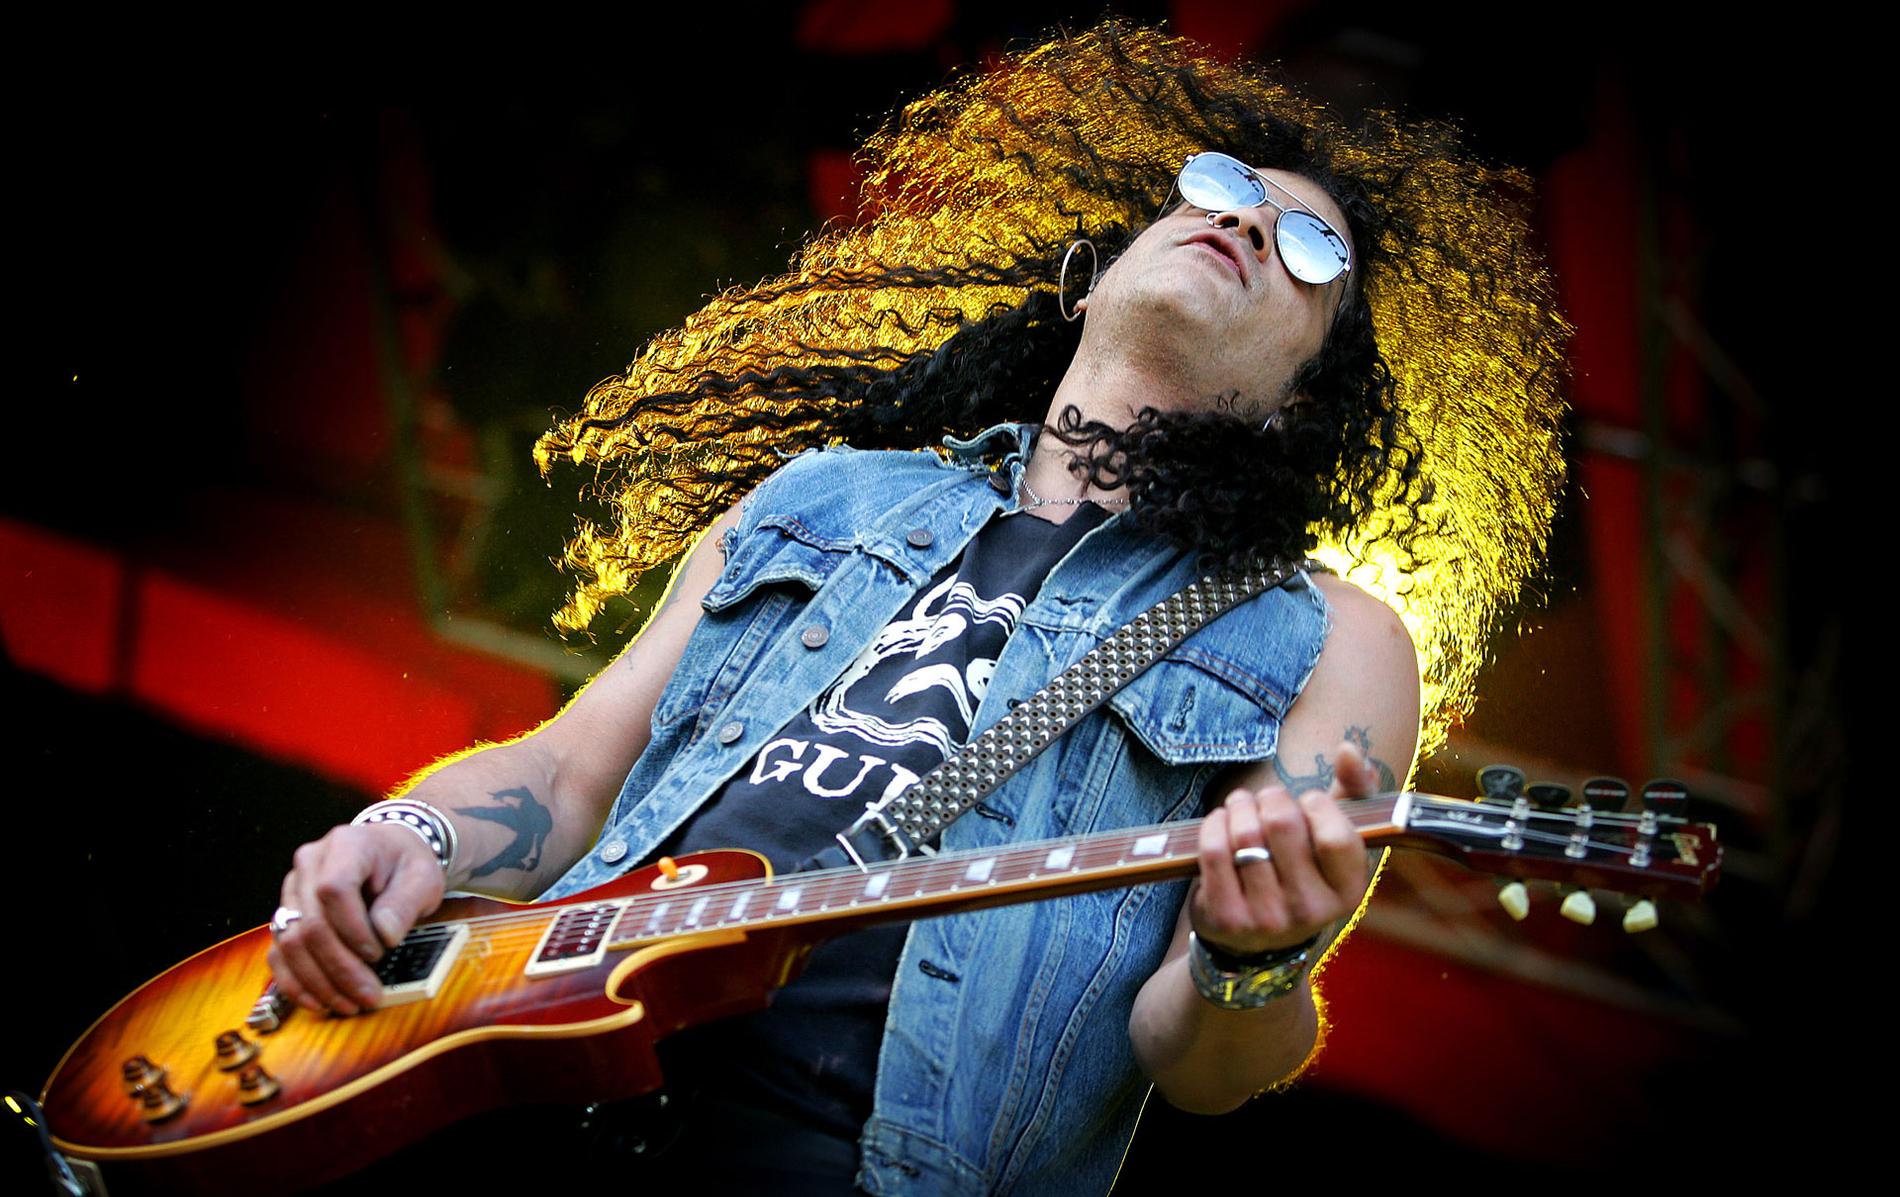 Hatten av Slash är världen bäste nu levande gitarrist – enligt läsarna. Här spelar han på Roskildefestivalen, för en gångs skull utan hatt.